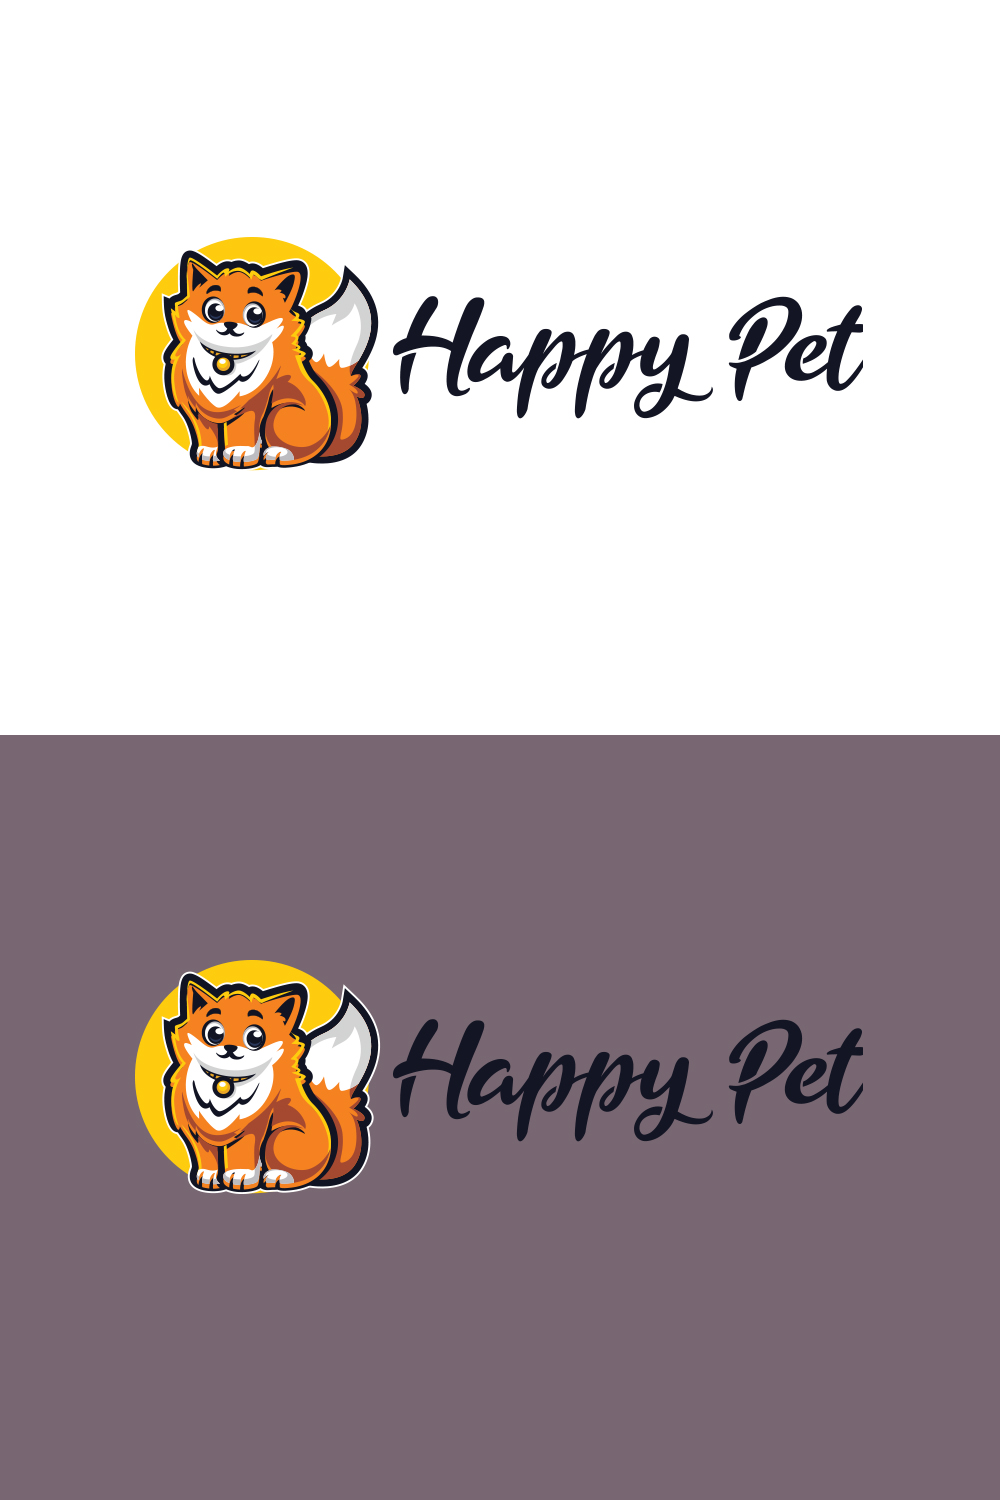 Happy Cat - Pet Shop Logo Design pinterest preview image.